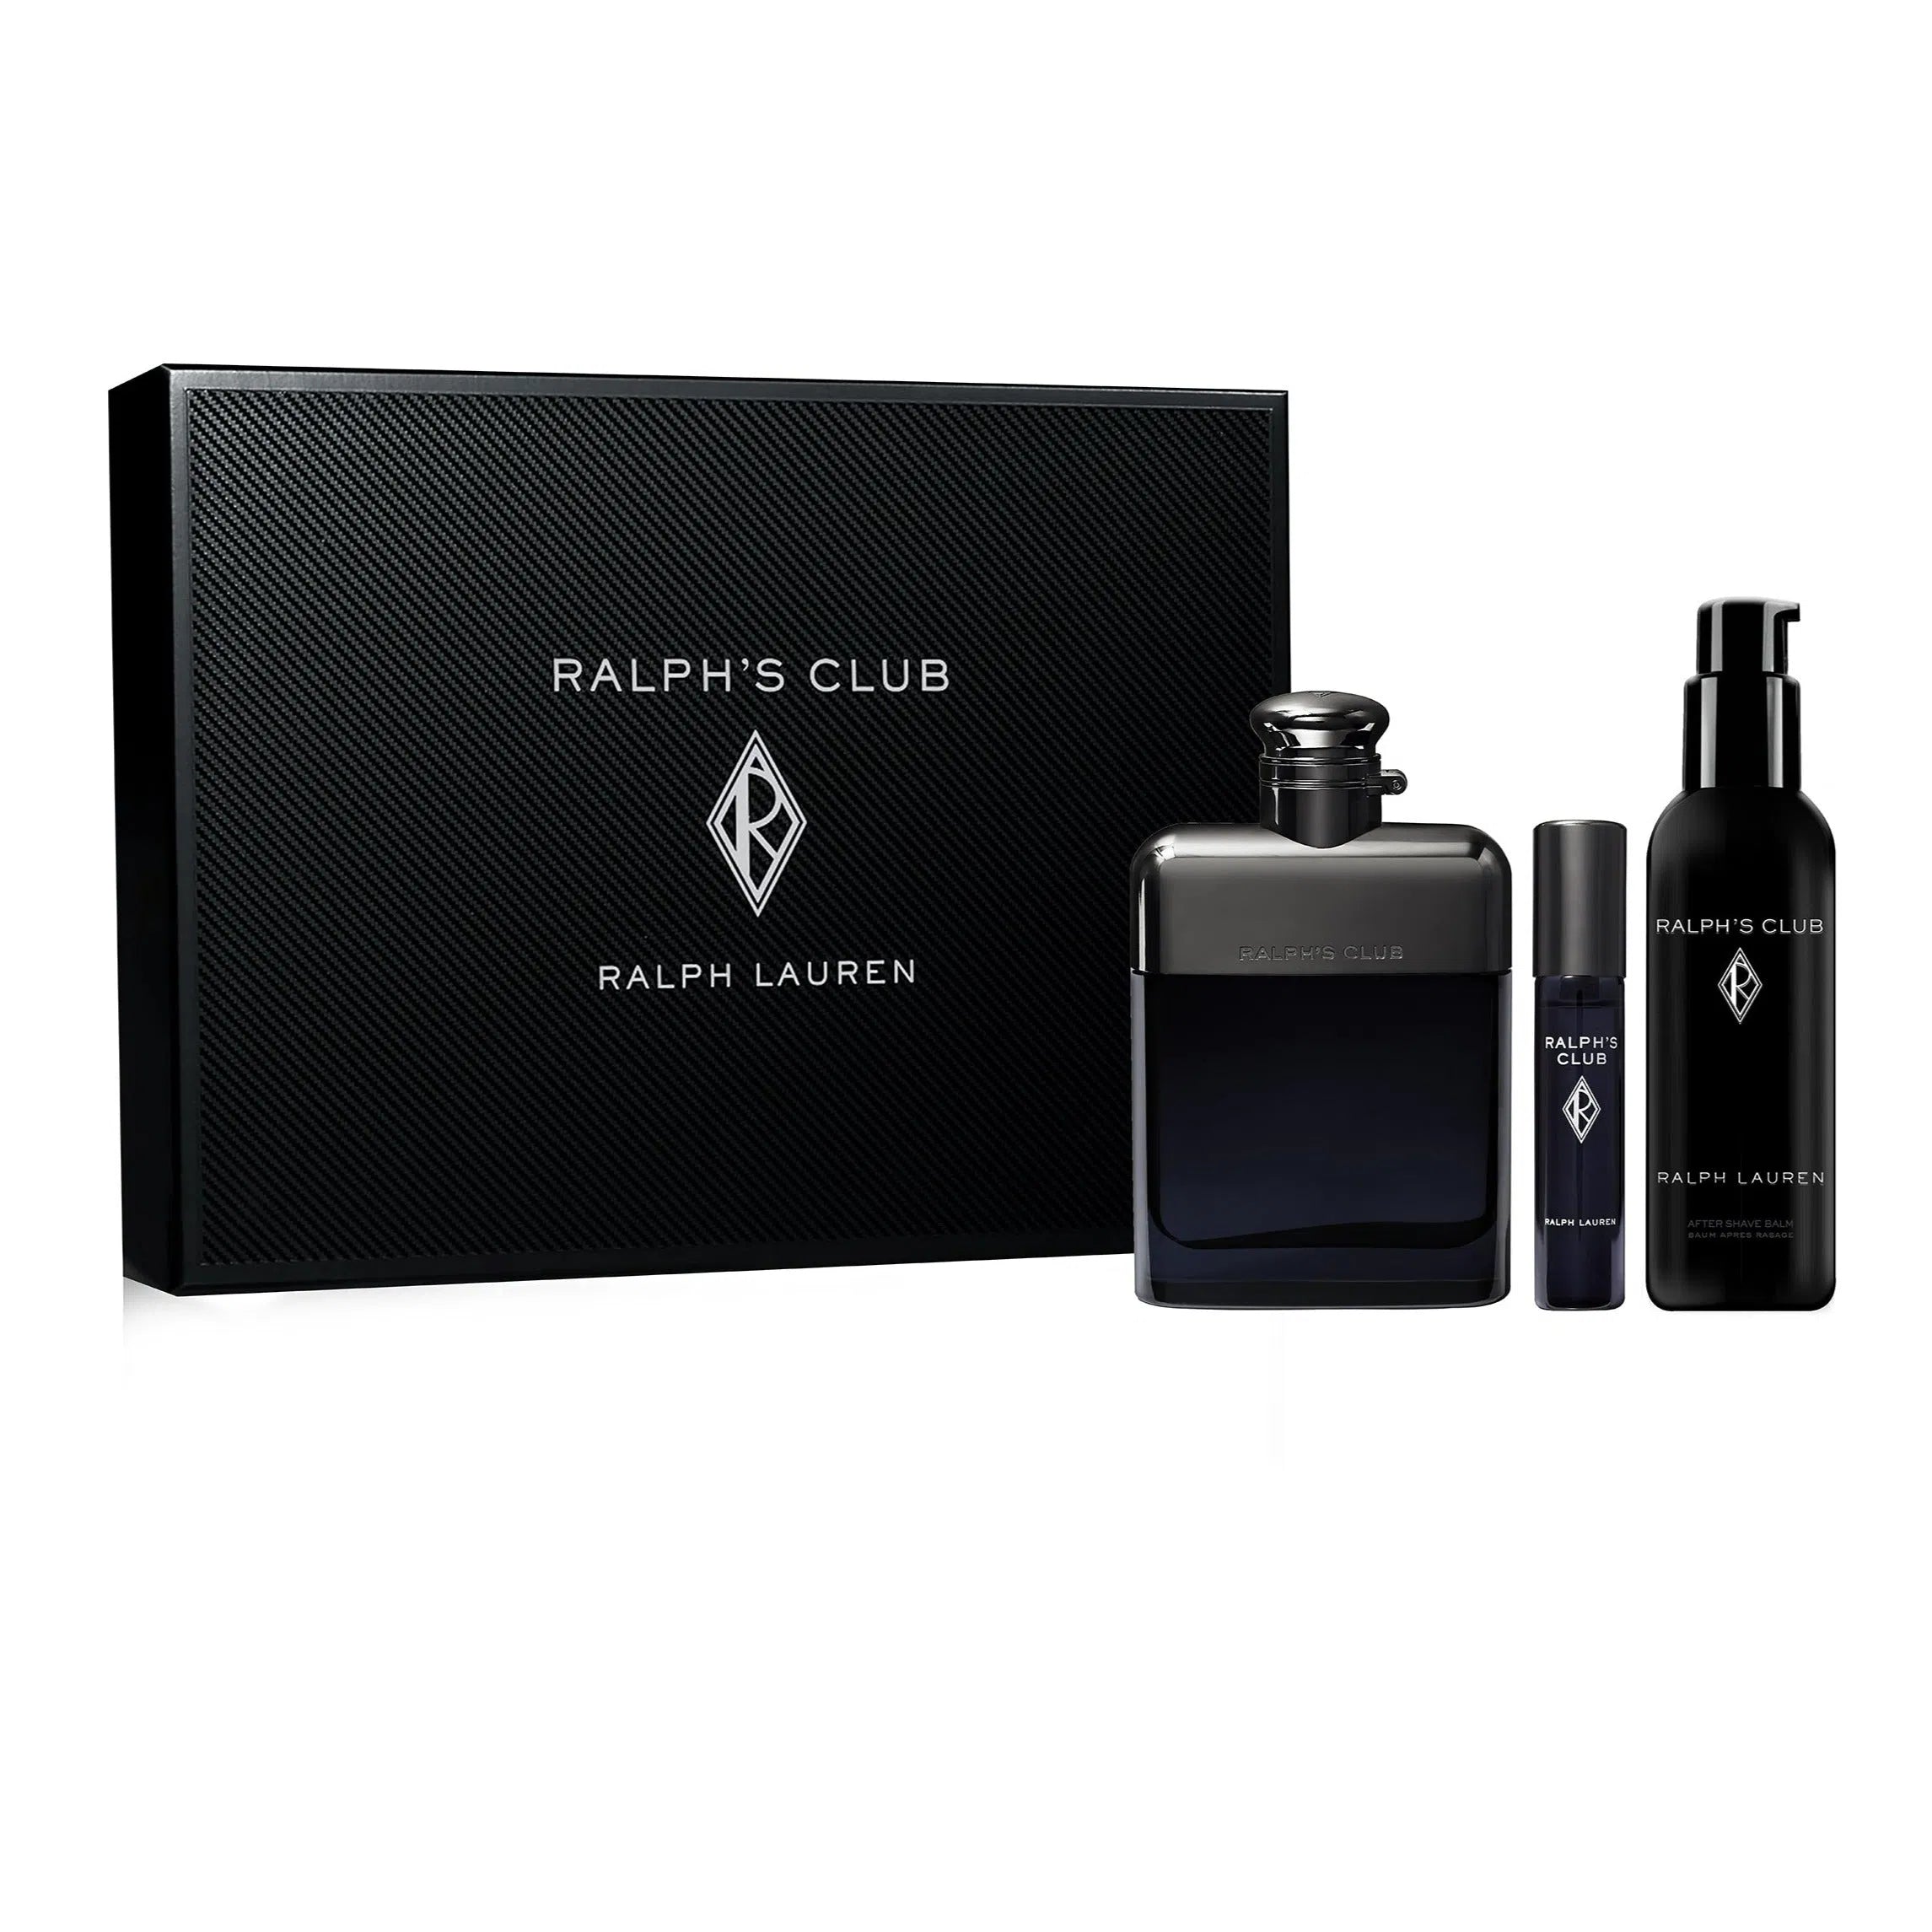 Estuche Ralph Lauren Ralph's Club EDP (M) / 3 Pc SP 100 ml; AS 75 ml; SP 10 ml - 3605972818539- Prive Perfumes Honduras